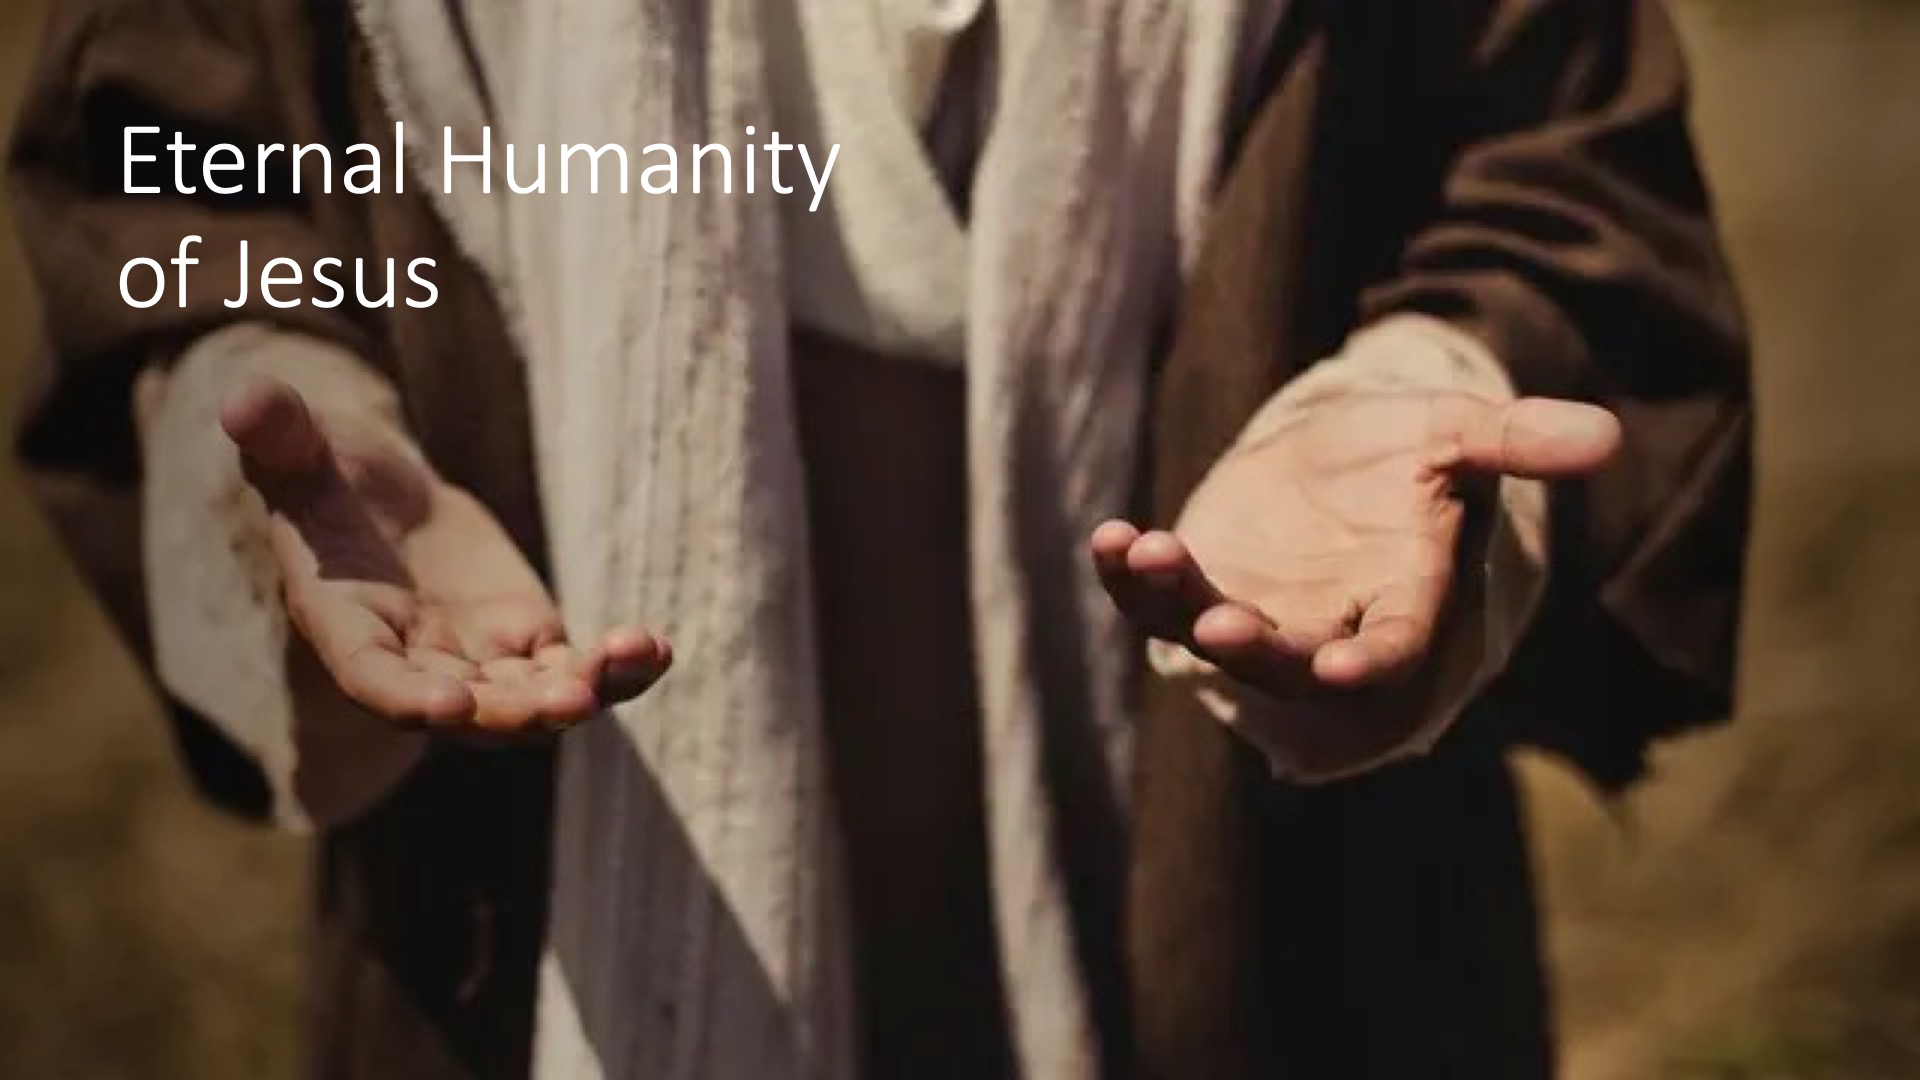 The eternal humanity of Jesus